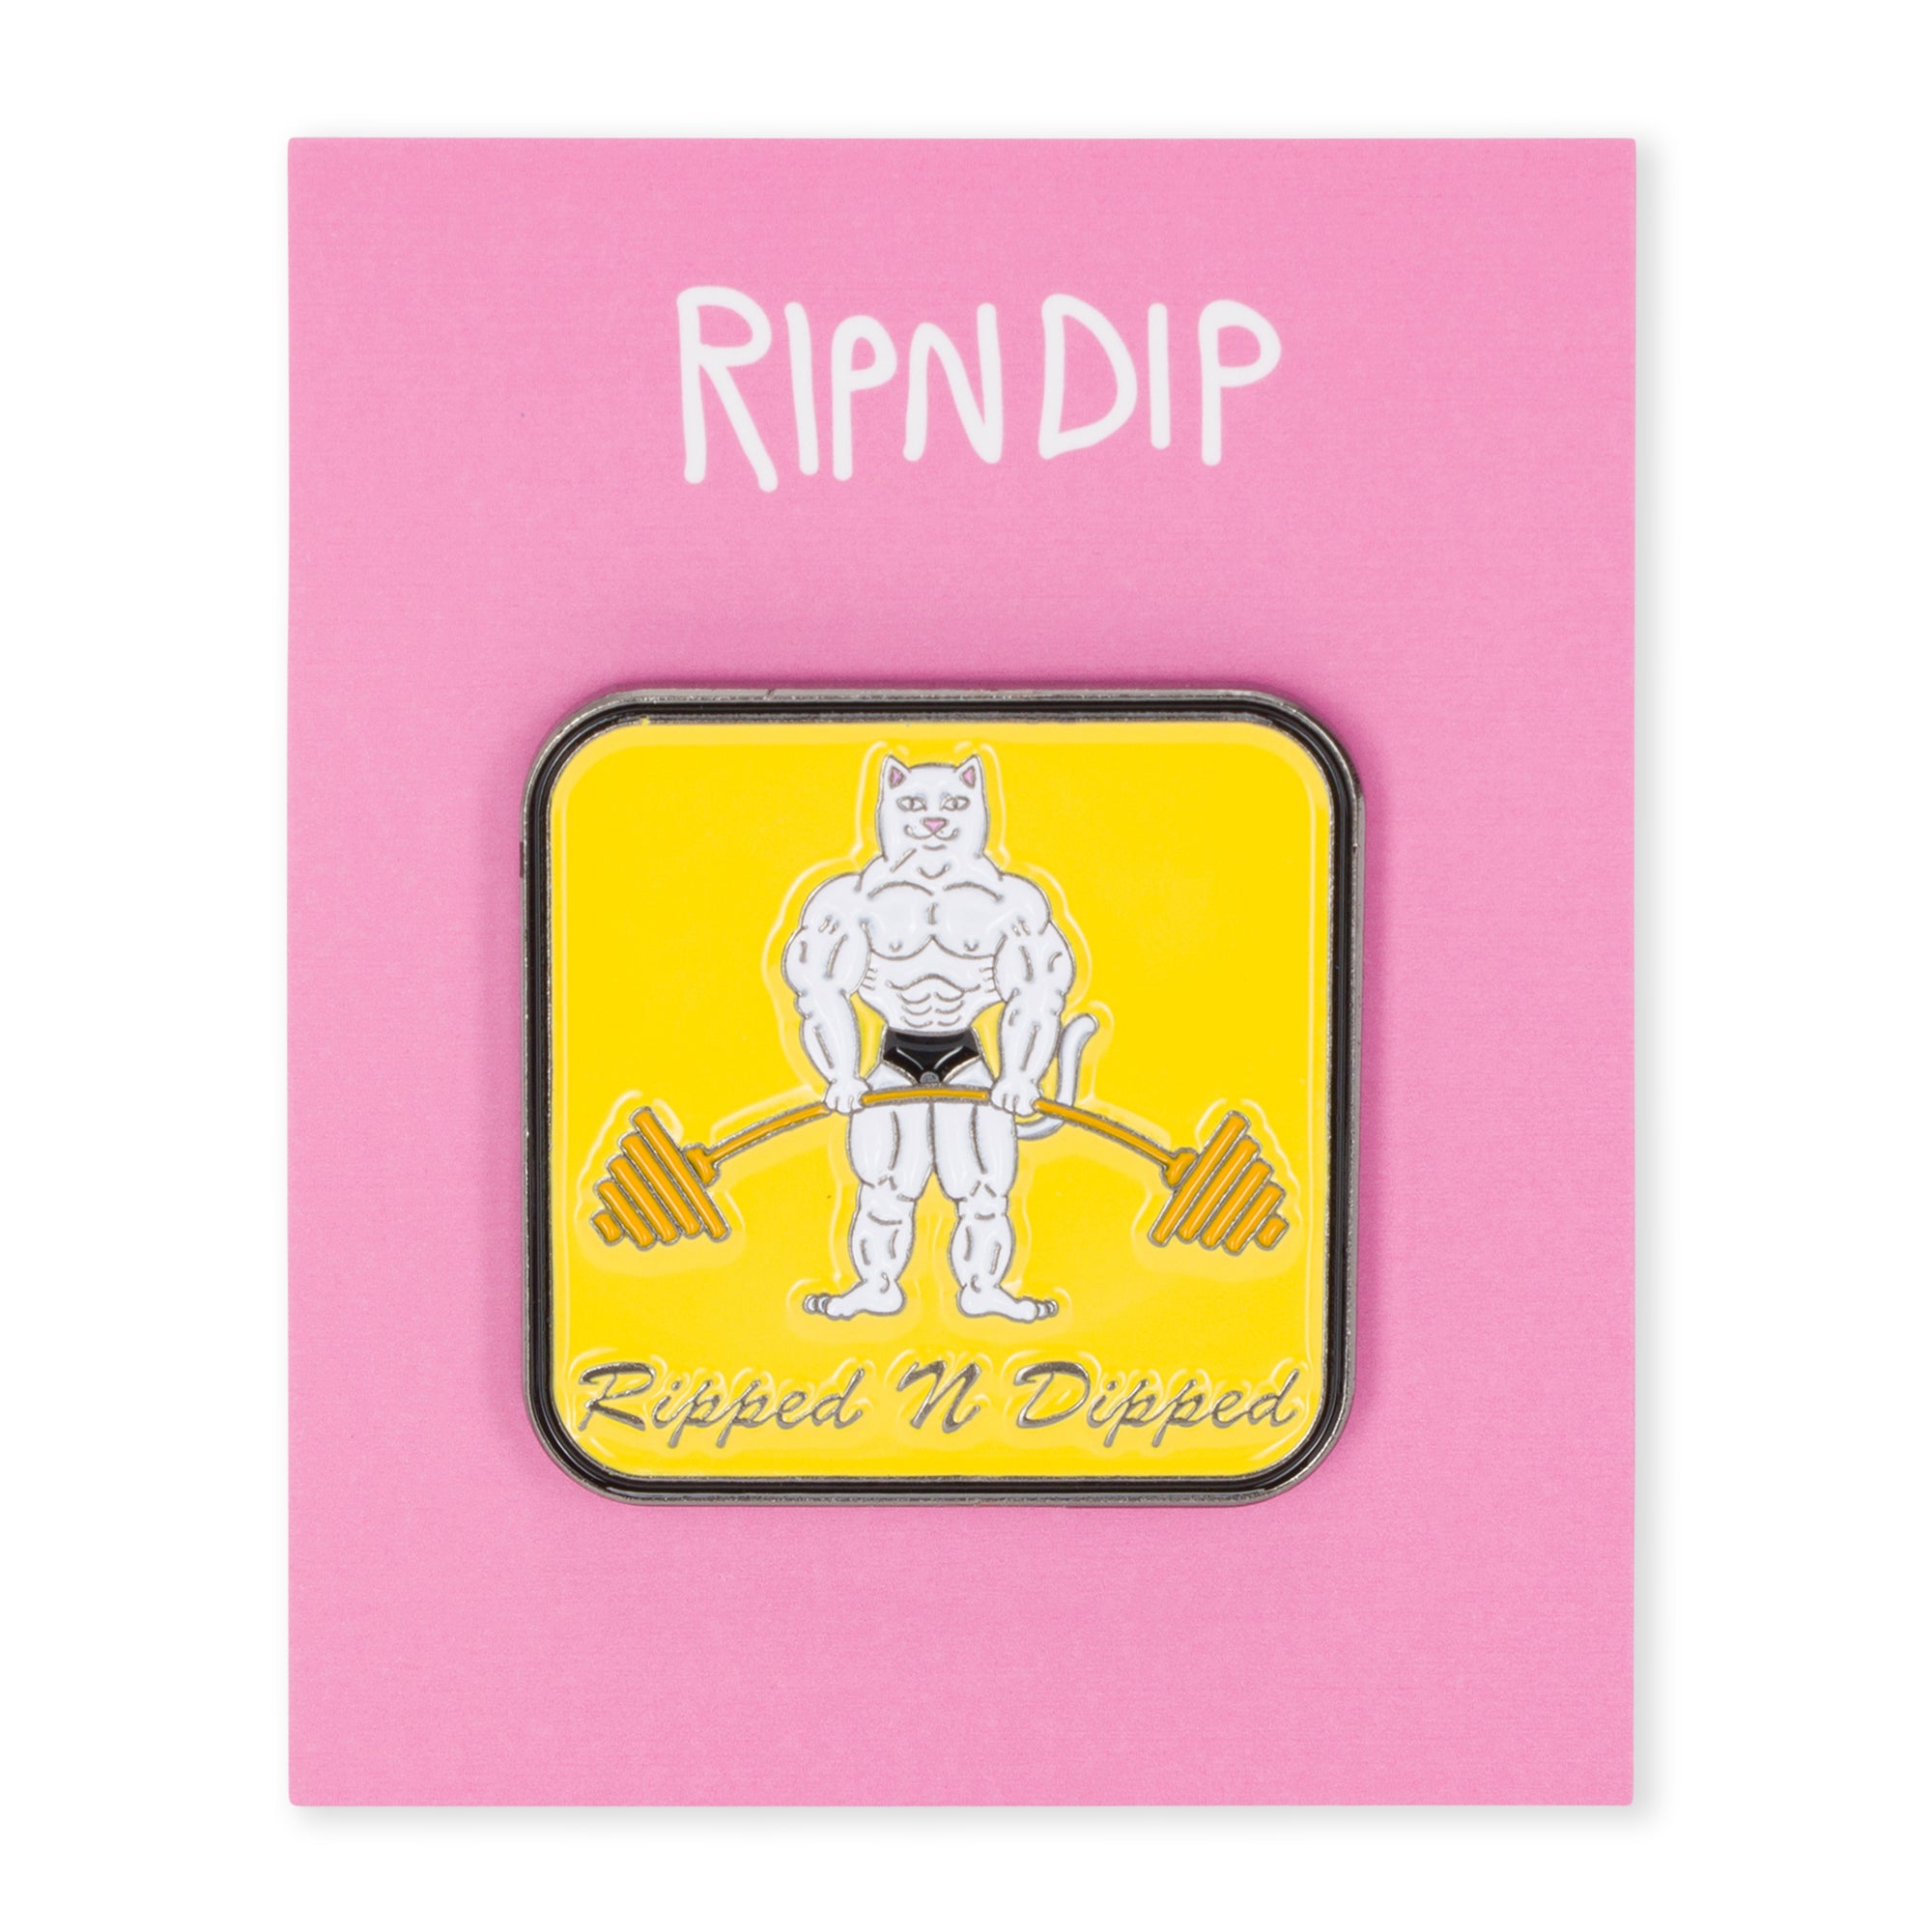 RipNDip Ripped N Dipped Pin (Multi)